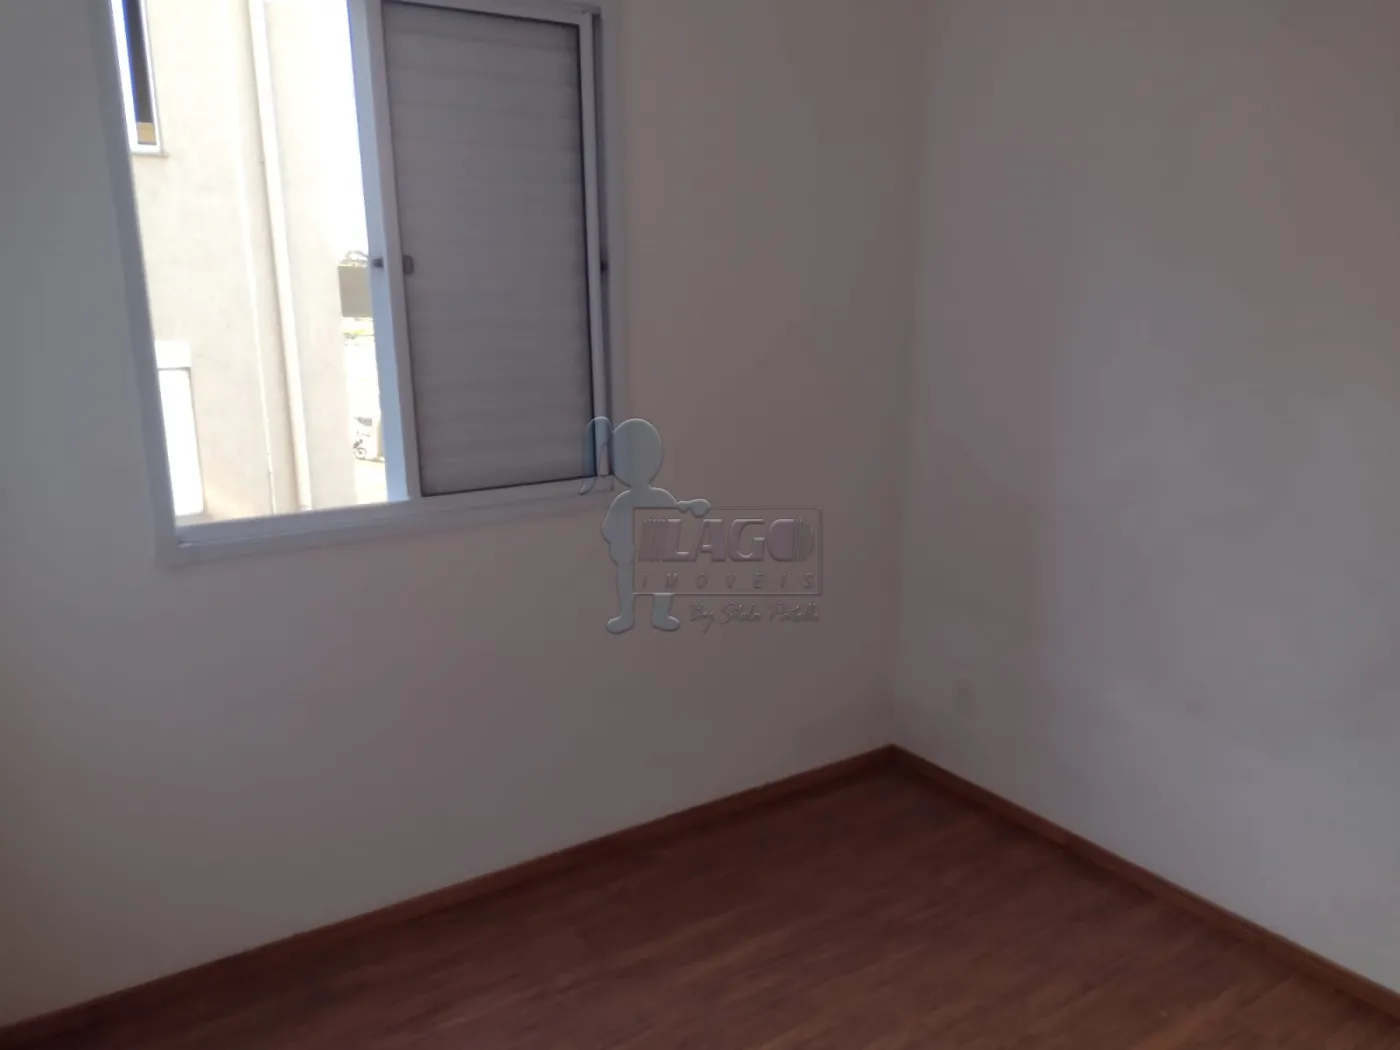 Comprar Apartamento / Padrão em Ribeirão Preto R$ 172.000,00 - Foto 4